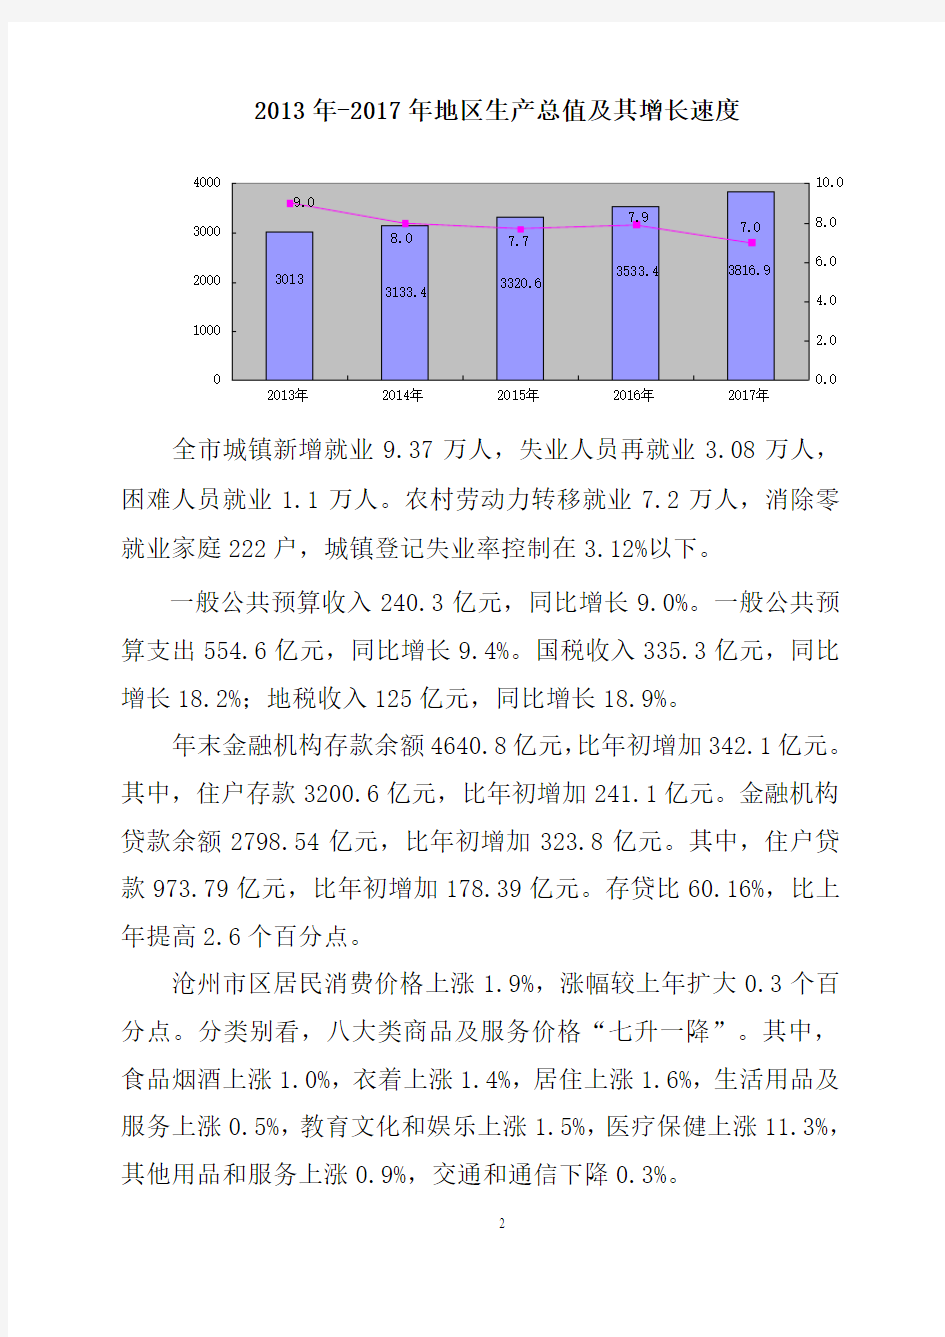 沧州市2017年国民经济和社会发展统计公报3.7